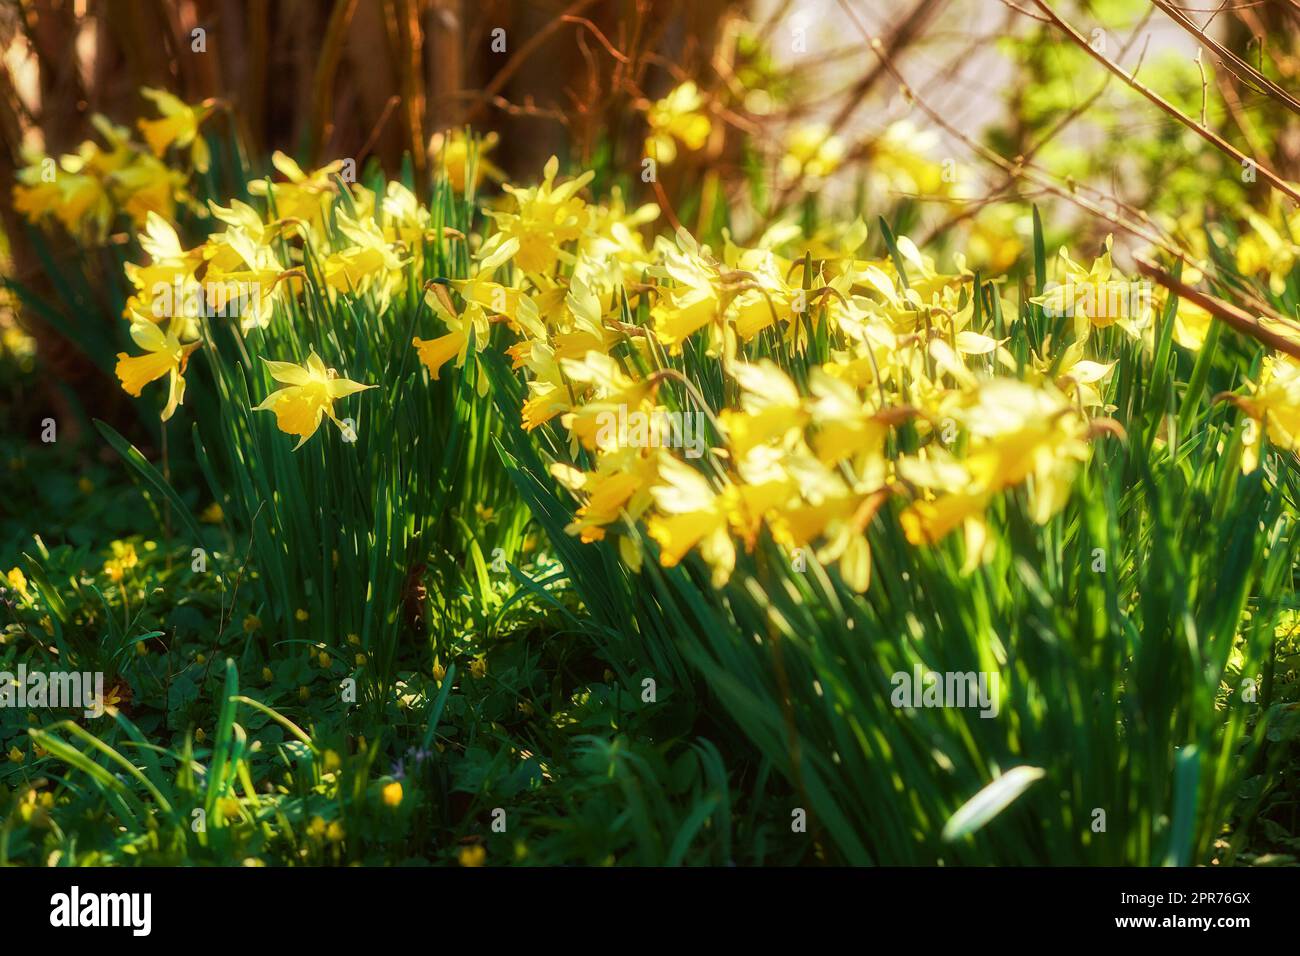 Gelbe Narzissen wachsen in einem botanischen Garten an einem sonnigen Tag im Freien. Landschaftlich reizvolle Landschaft wunderschöne Blumen mit leuchtenden Blütenblättern, die in der Natur blühen. Frühjahrspflanze für Wiedergeburt und Neuanfang Stockfoto